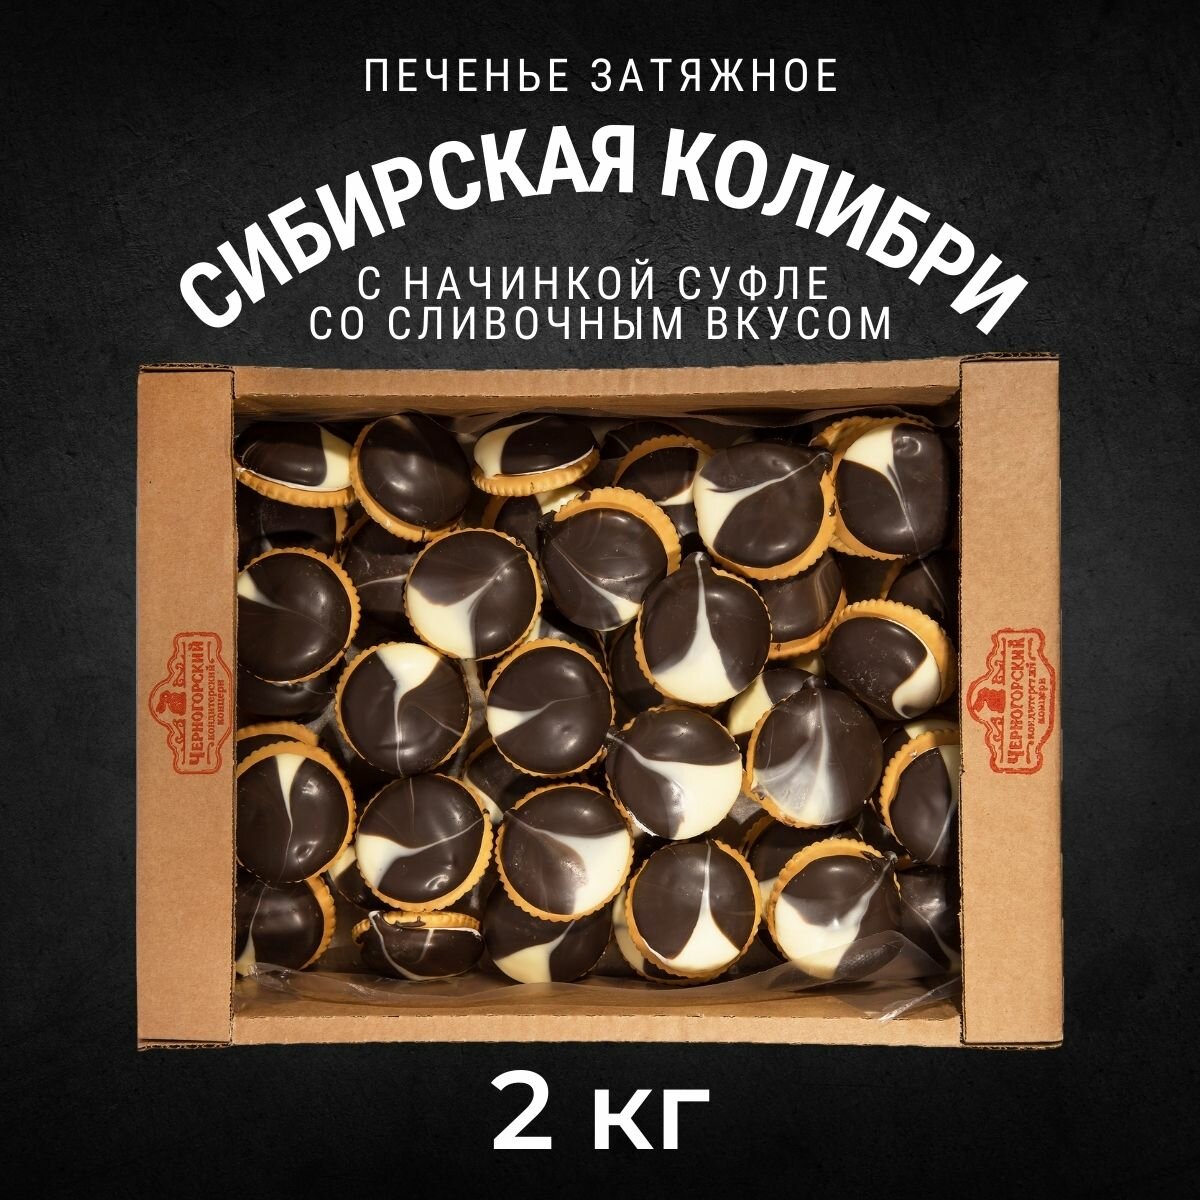 Печенье затяжное сибирская колибри Сливочный аромат 2 кг , Черногорский